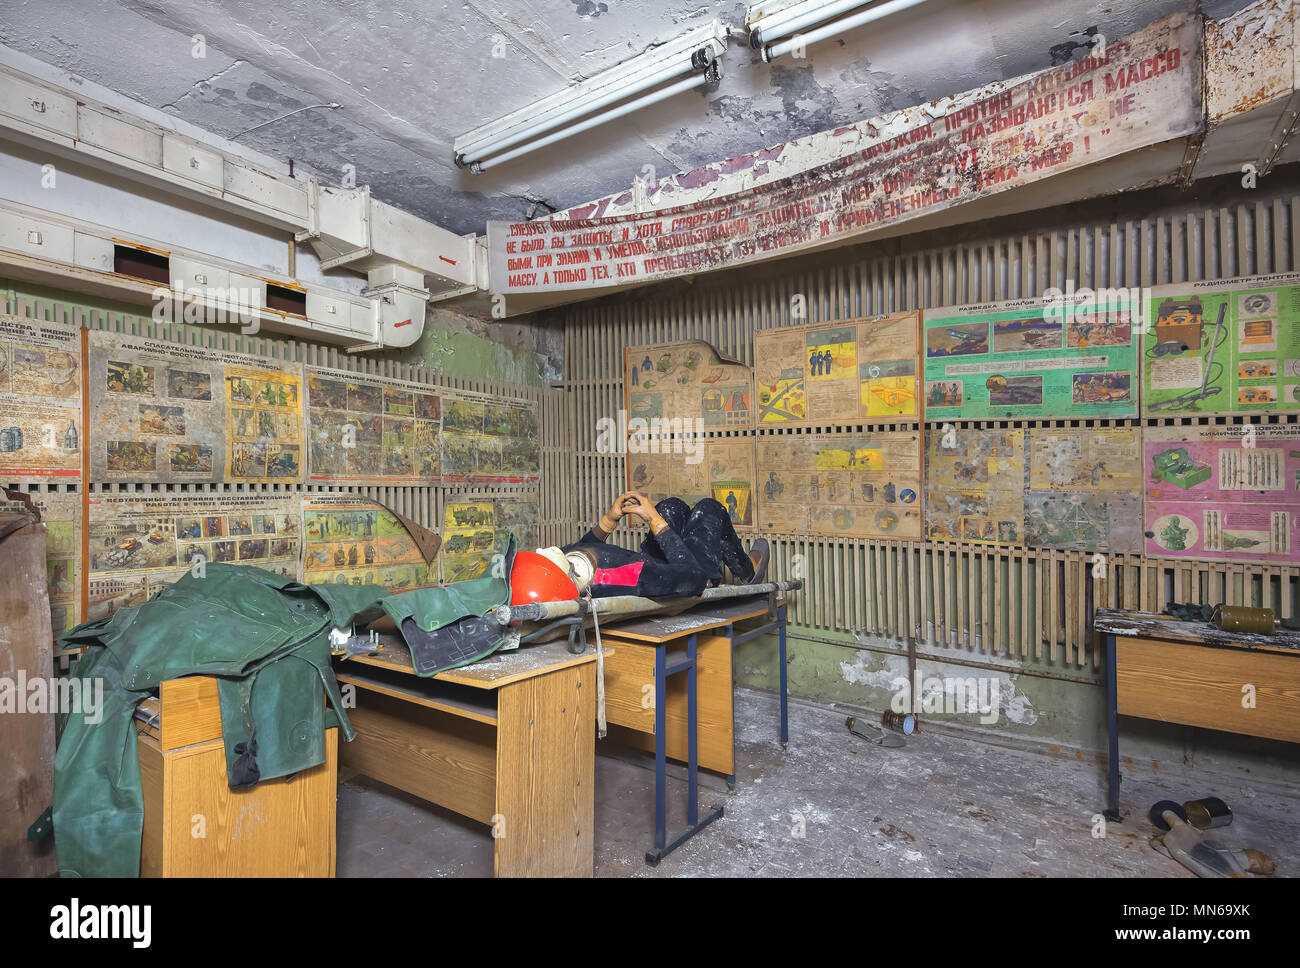 Zimmer in einem verlassenen Luftschutzraum während des Kalten Krieges mit der Sowjetunion Slogan unter der Decke. Schulung auf Zivilschutz mit alten Schreibtische, Po Stockfoto